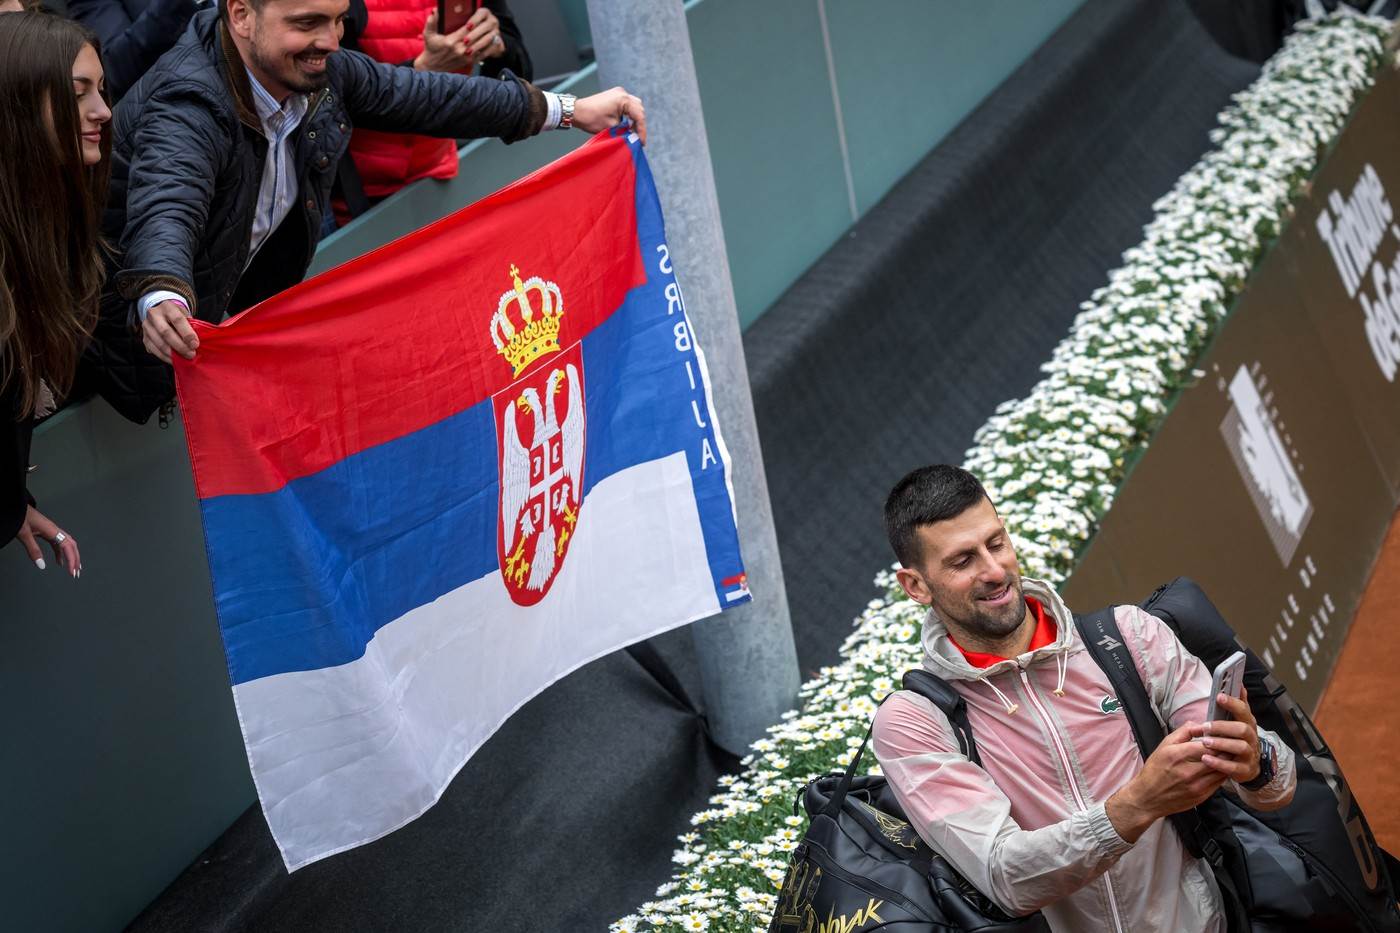  ATP skinuo zastavu Srbije pored Đokovićevog imena 